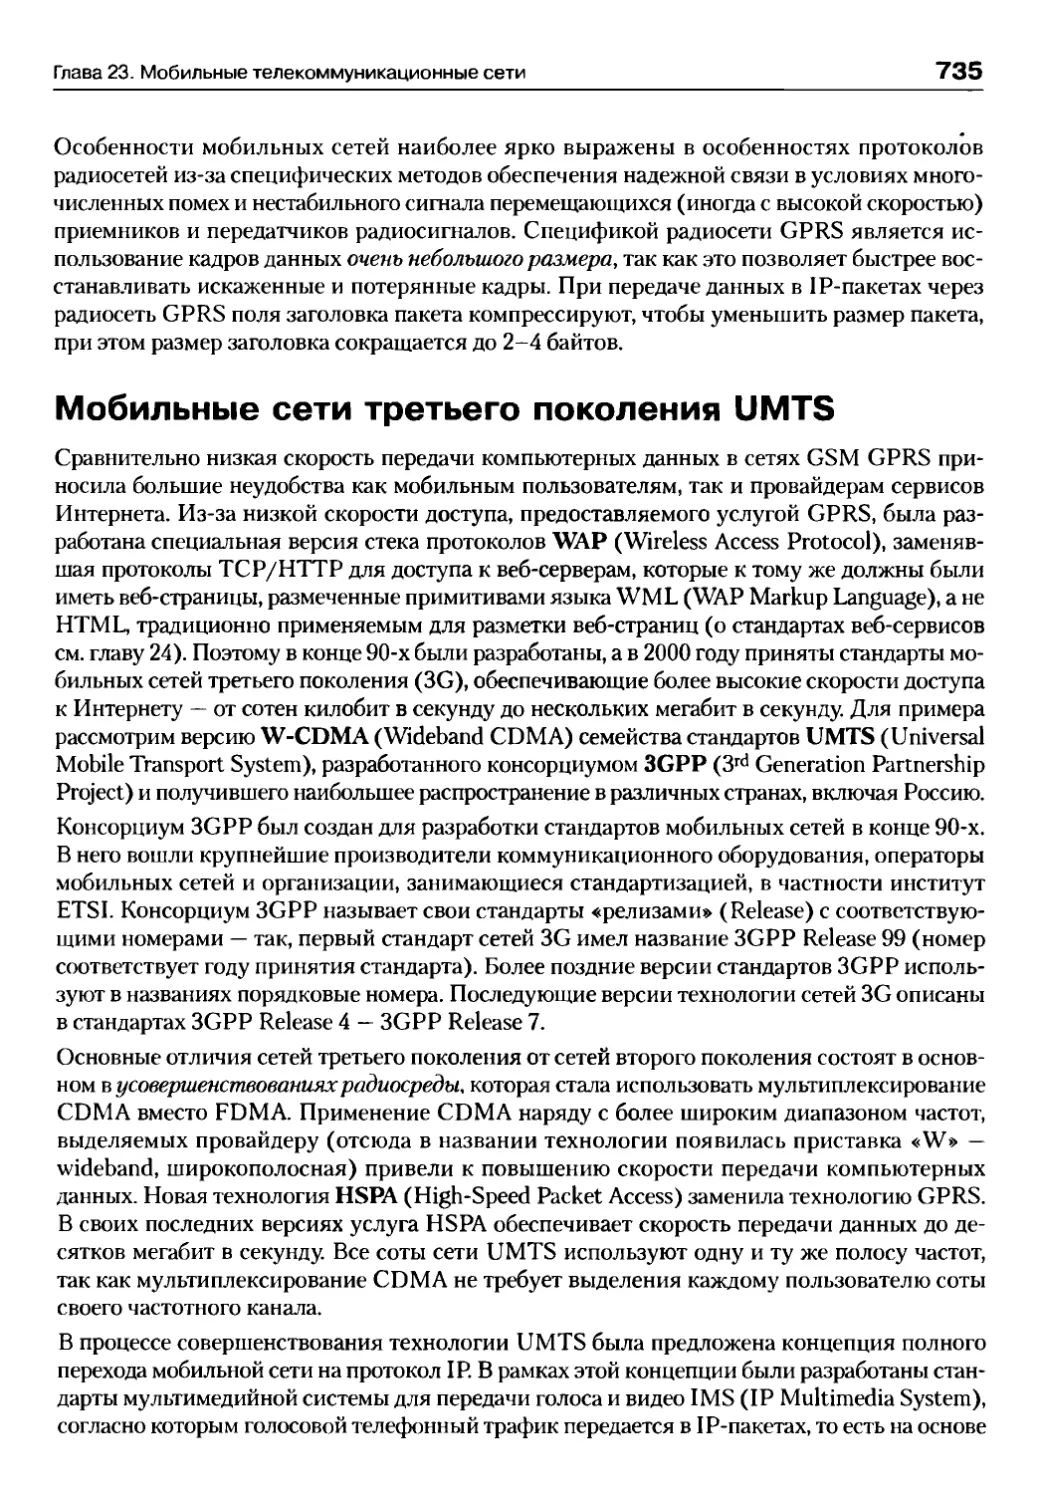 Мобильные сети третьего поколения UMTS